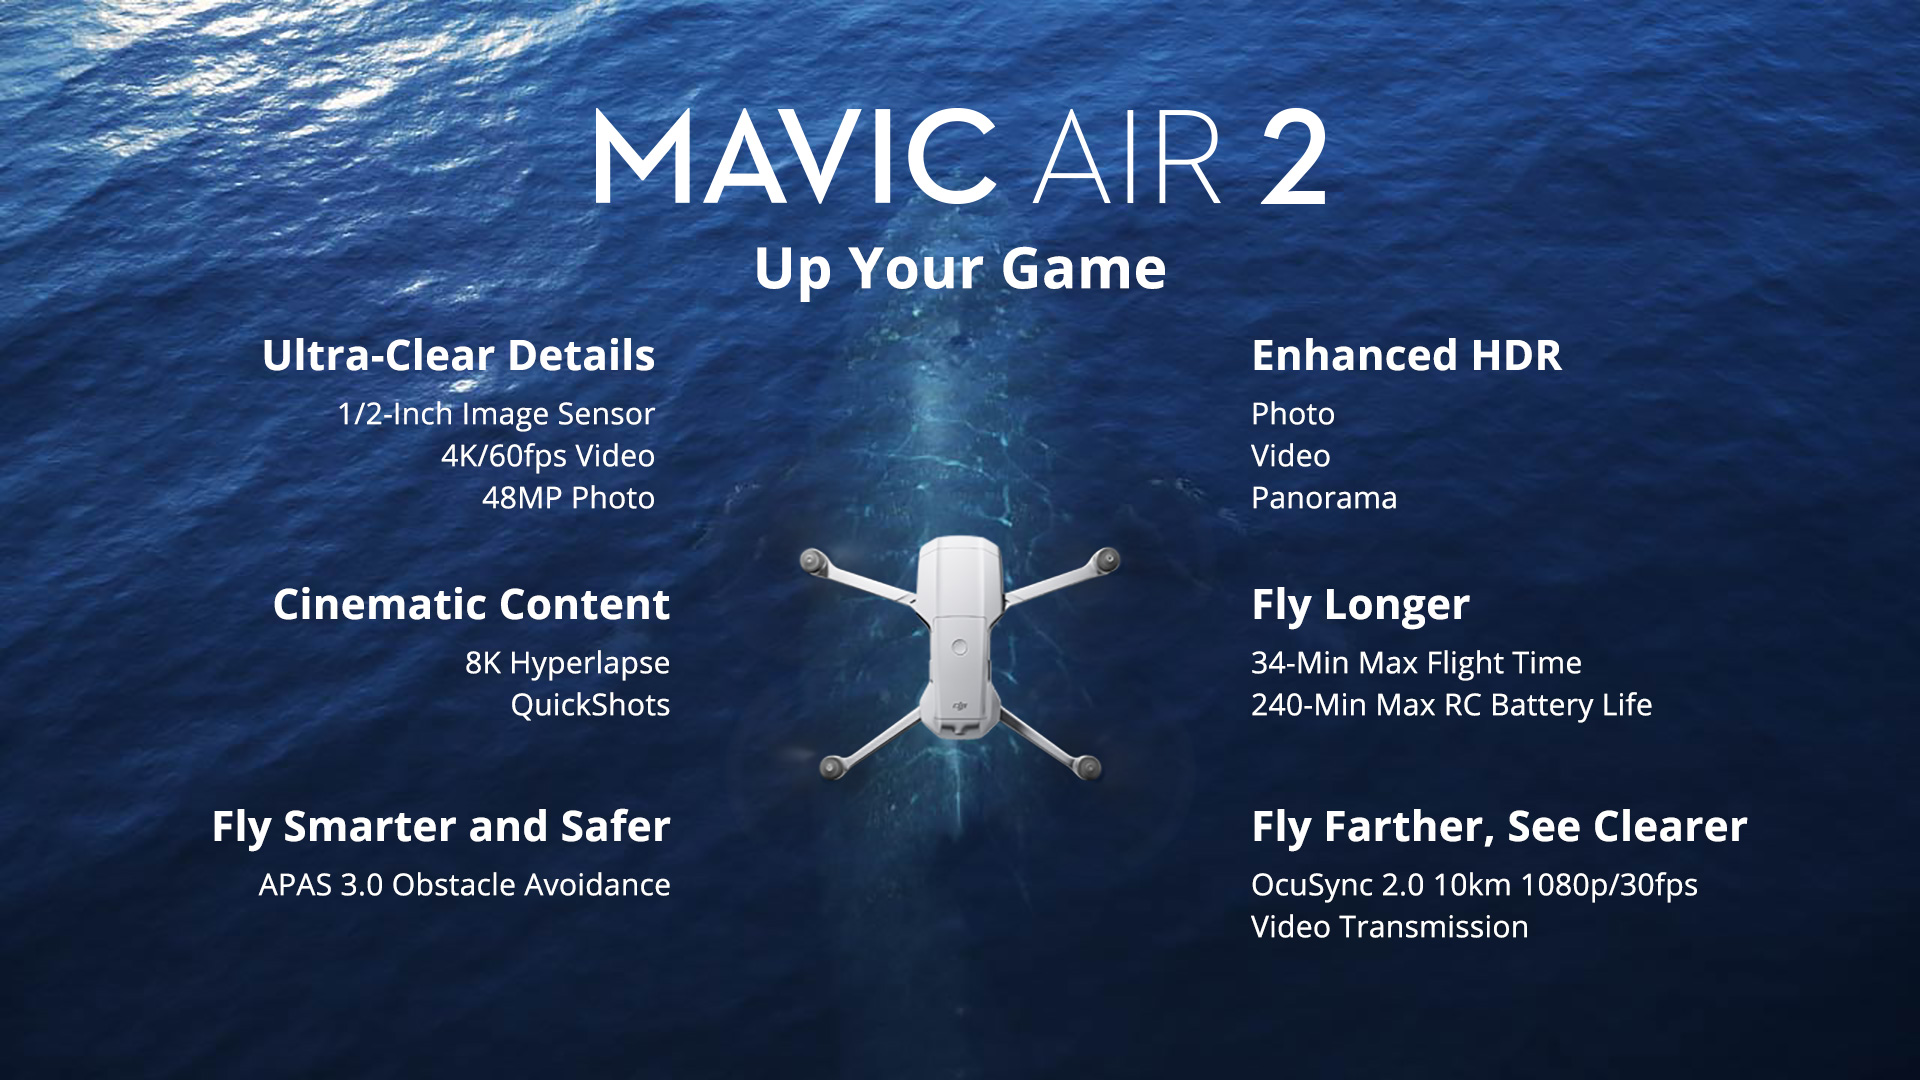 DJI Mavic Air 2 Up Your Game